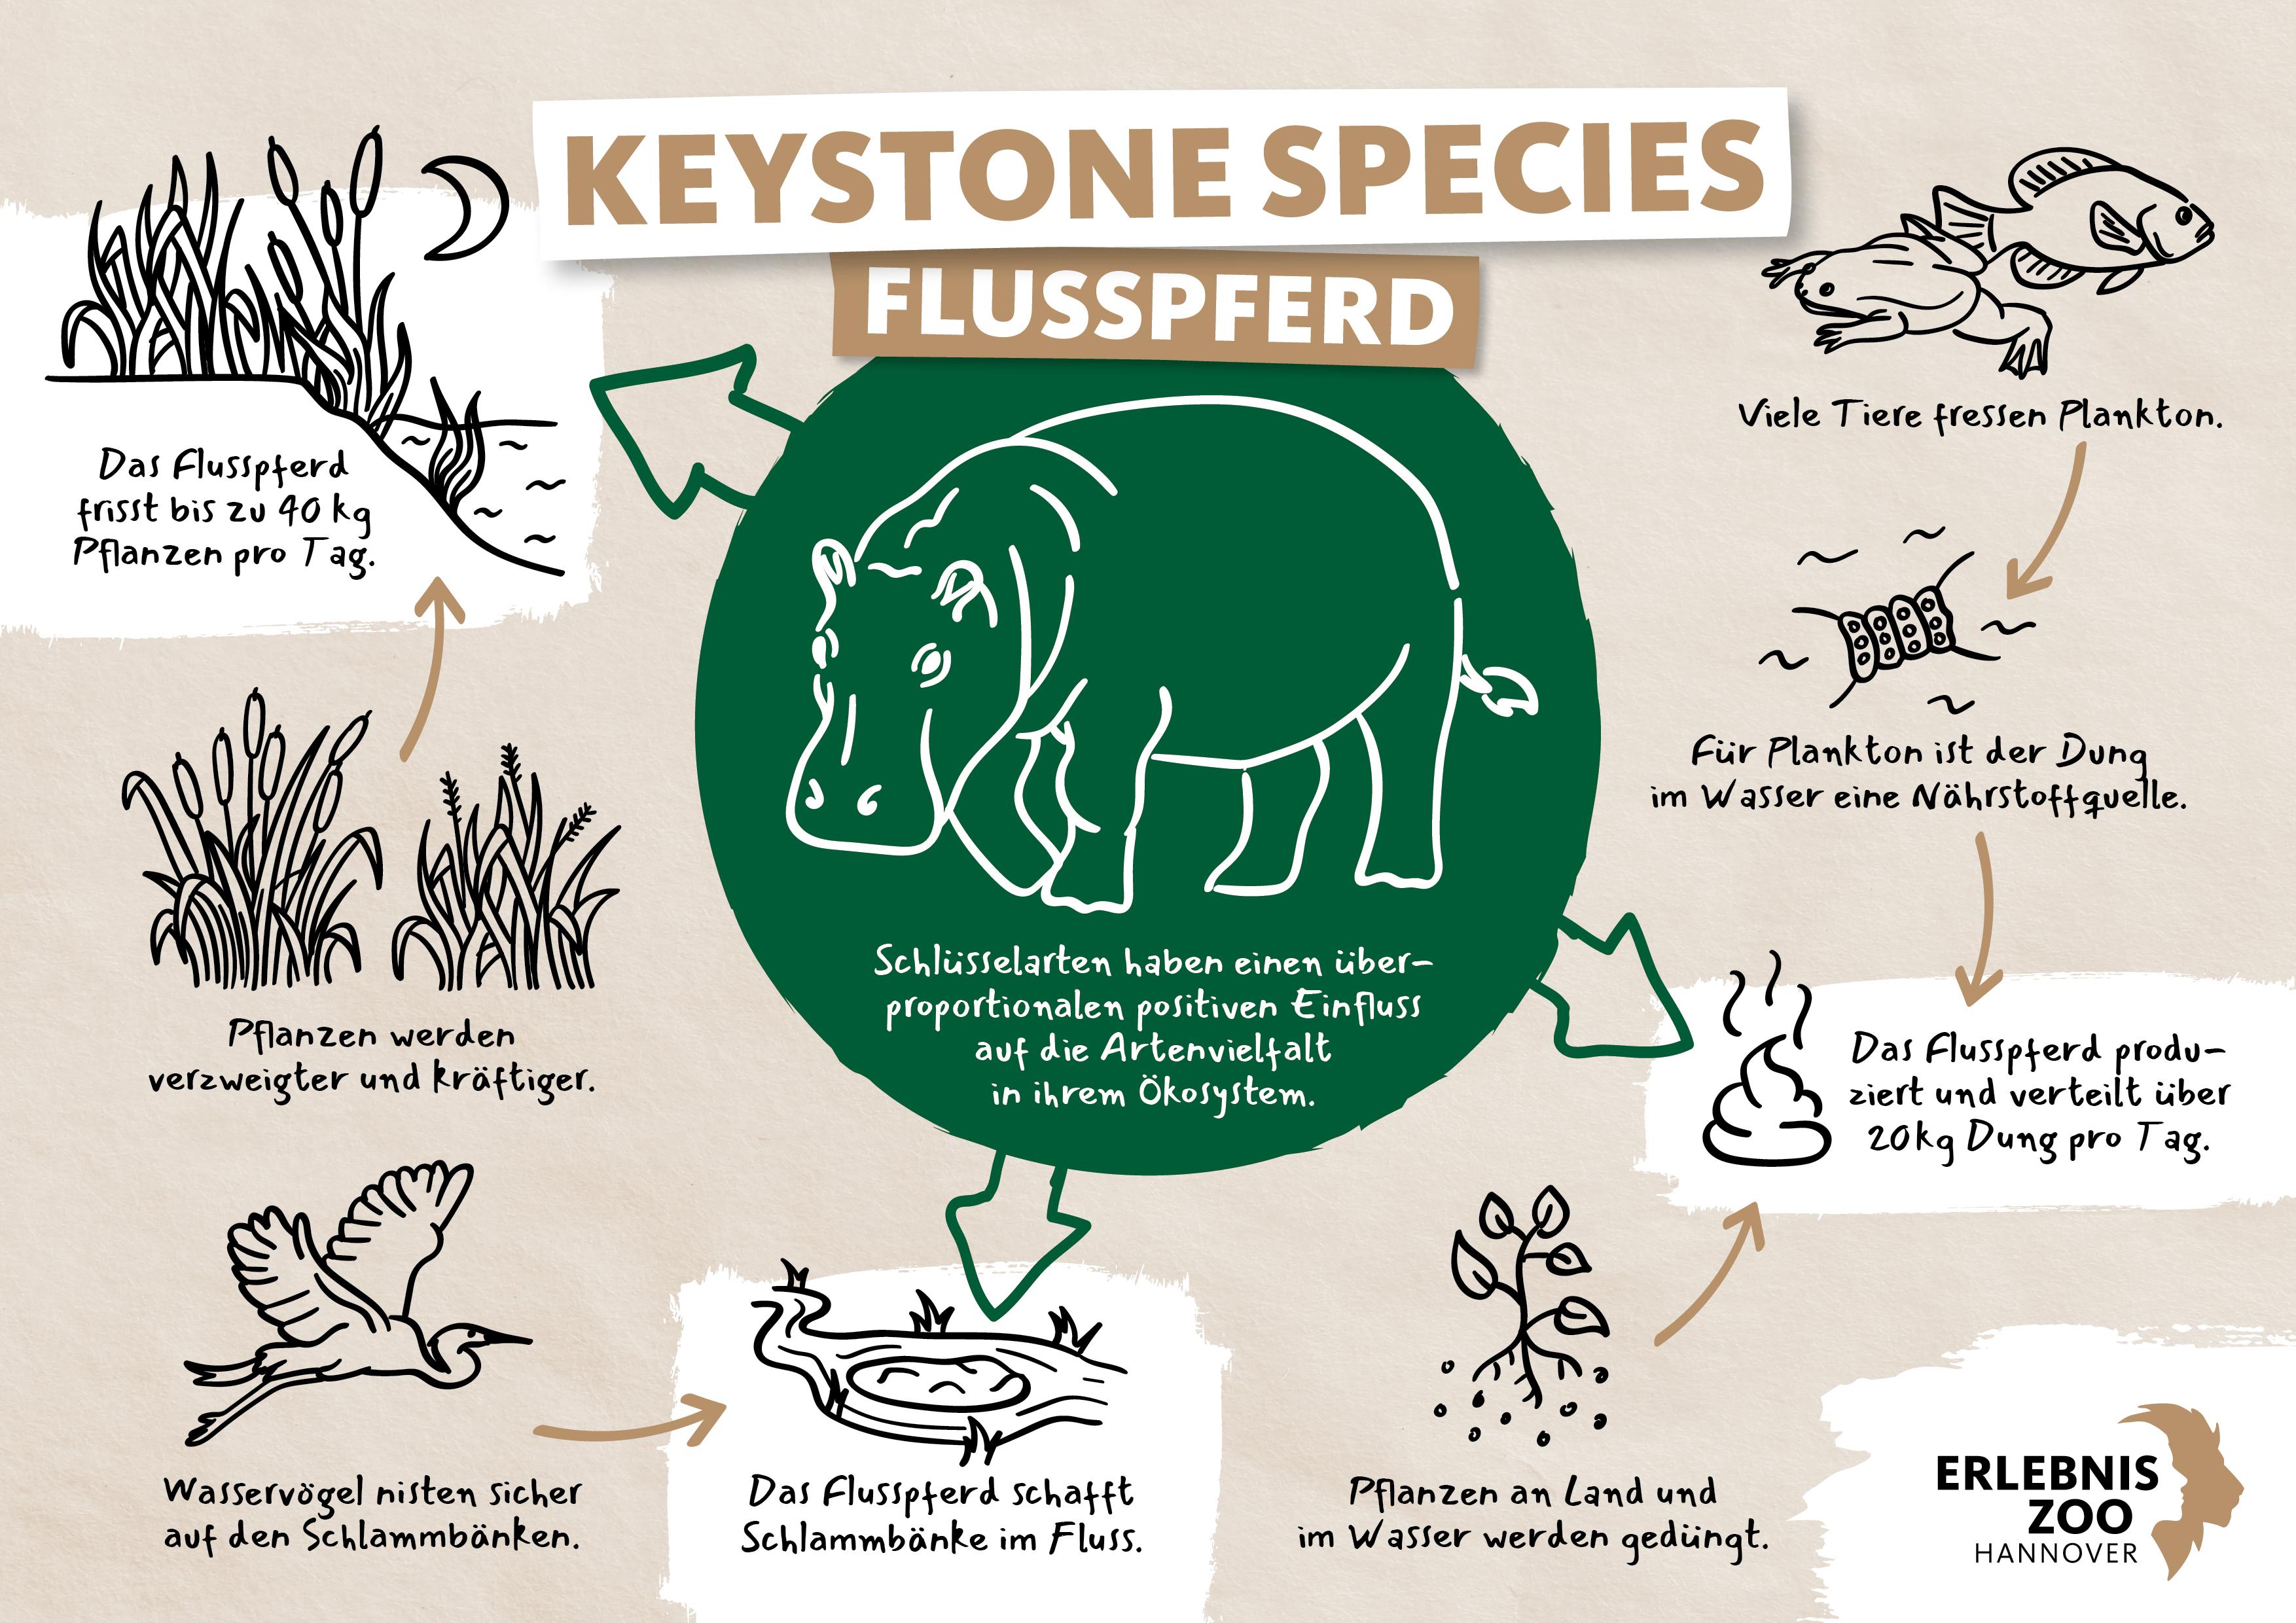 Keystone Species Flusspferd